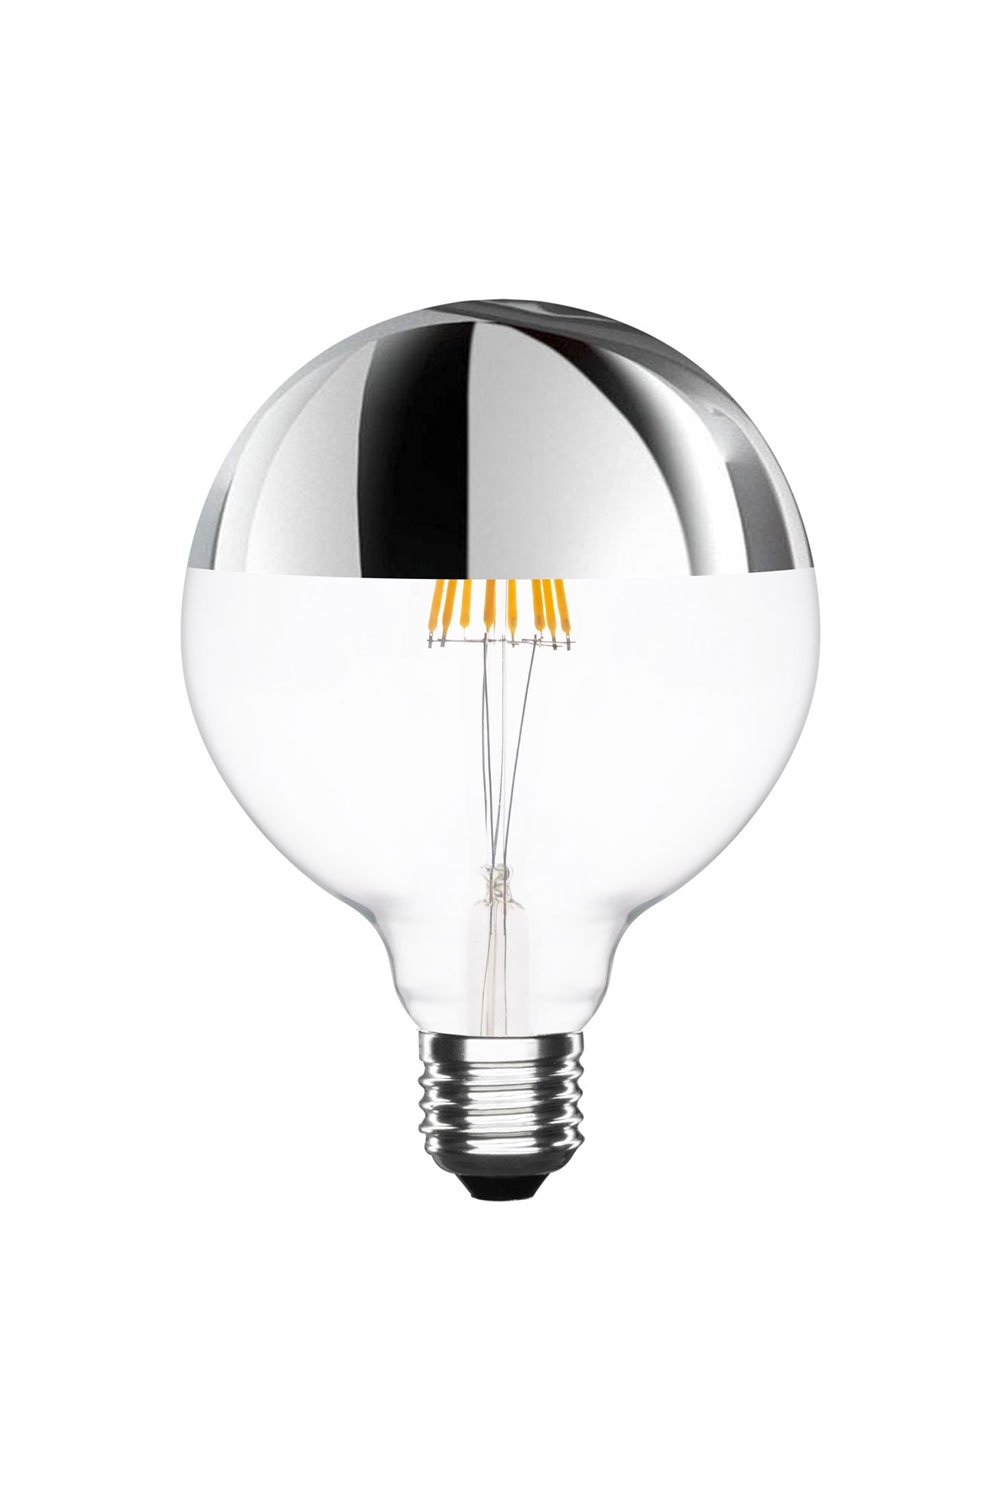 Lampadina LED Vintage Dimmerabile e Riflettente E27 Spher, immagine della galleria 1